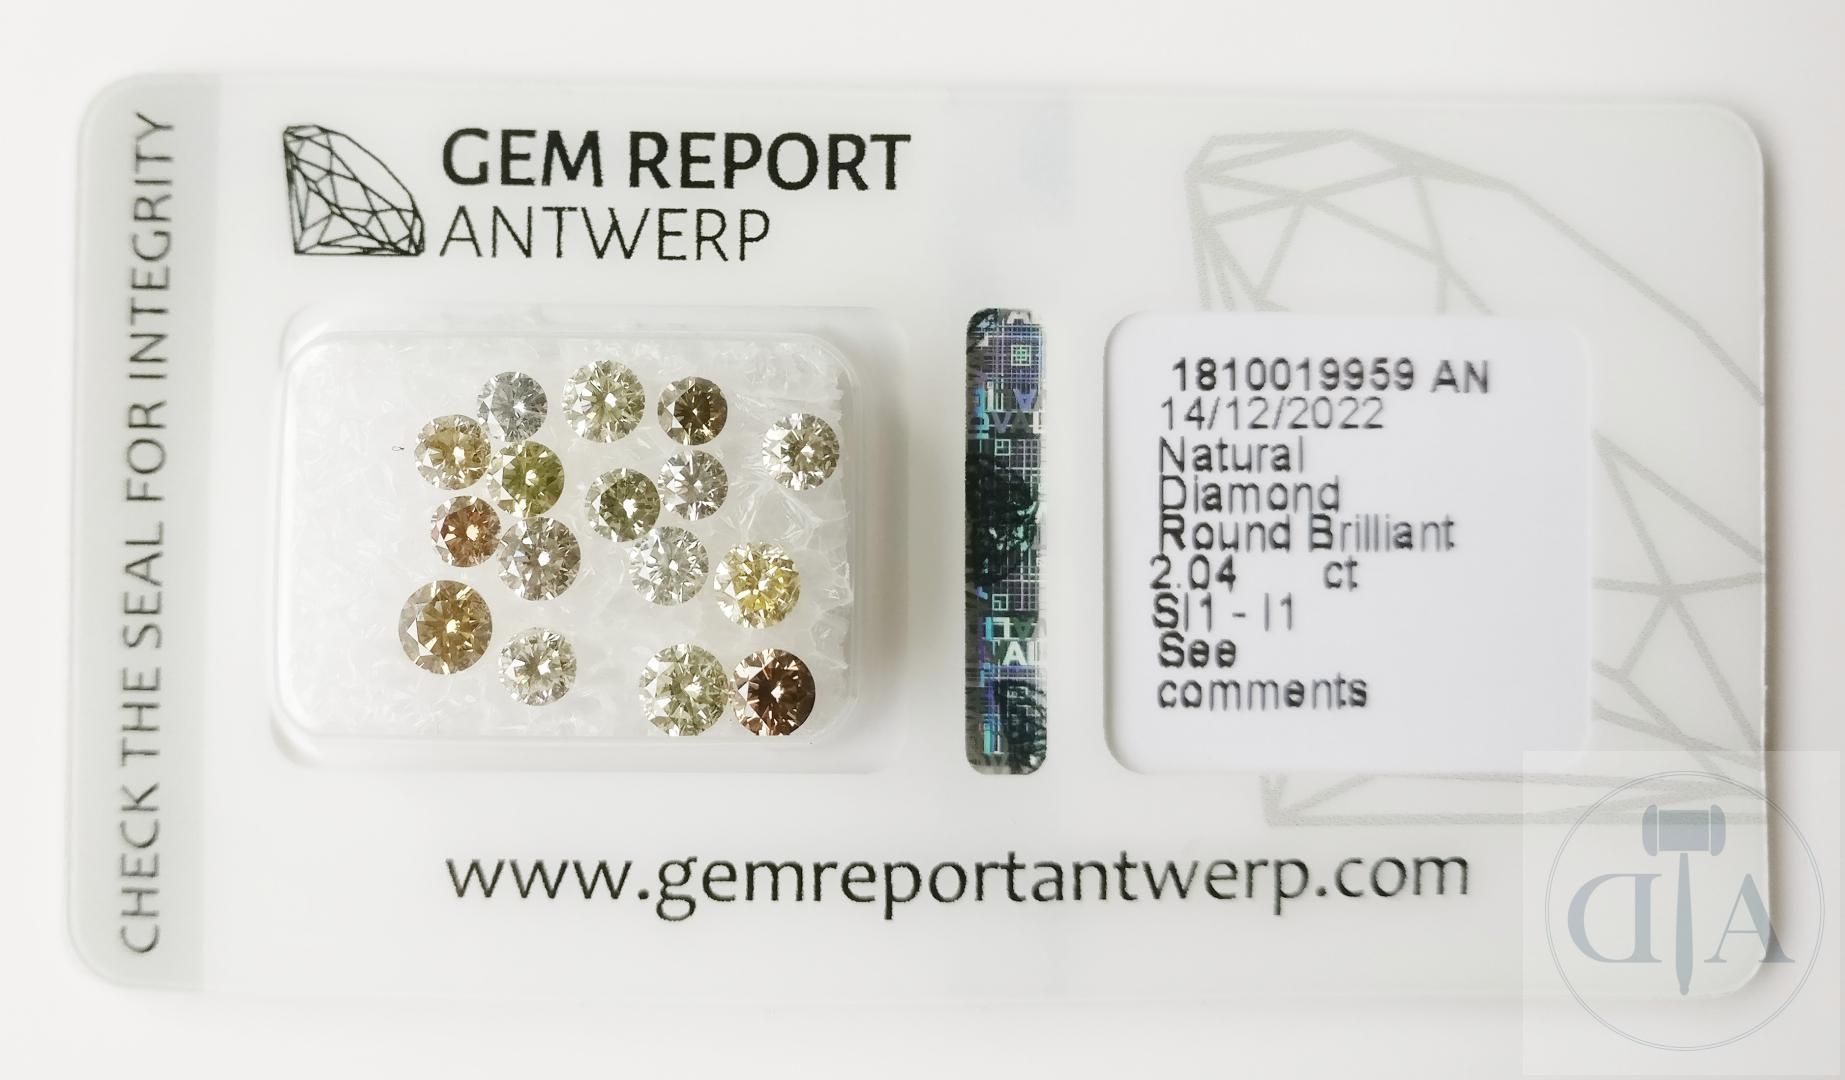 Null Diamant 2,04ct GRA zertifiziert

- GRA-Zertifikat Nr. 1810019959AN 
- Form:&hellip;